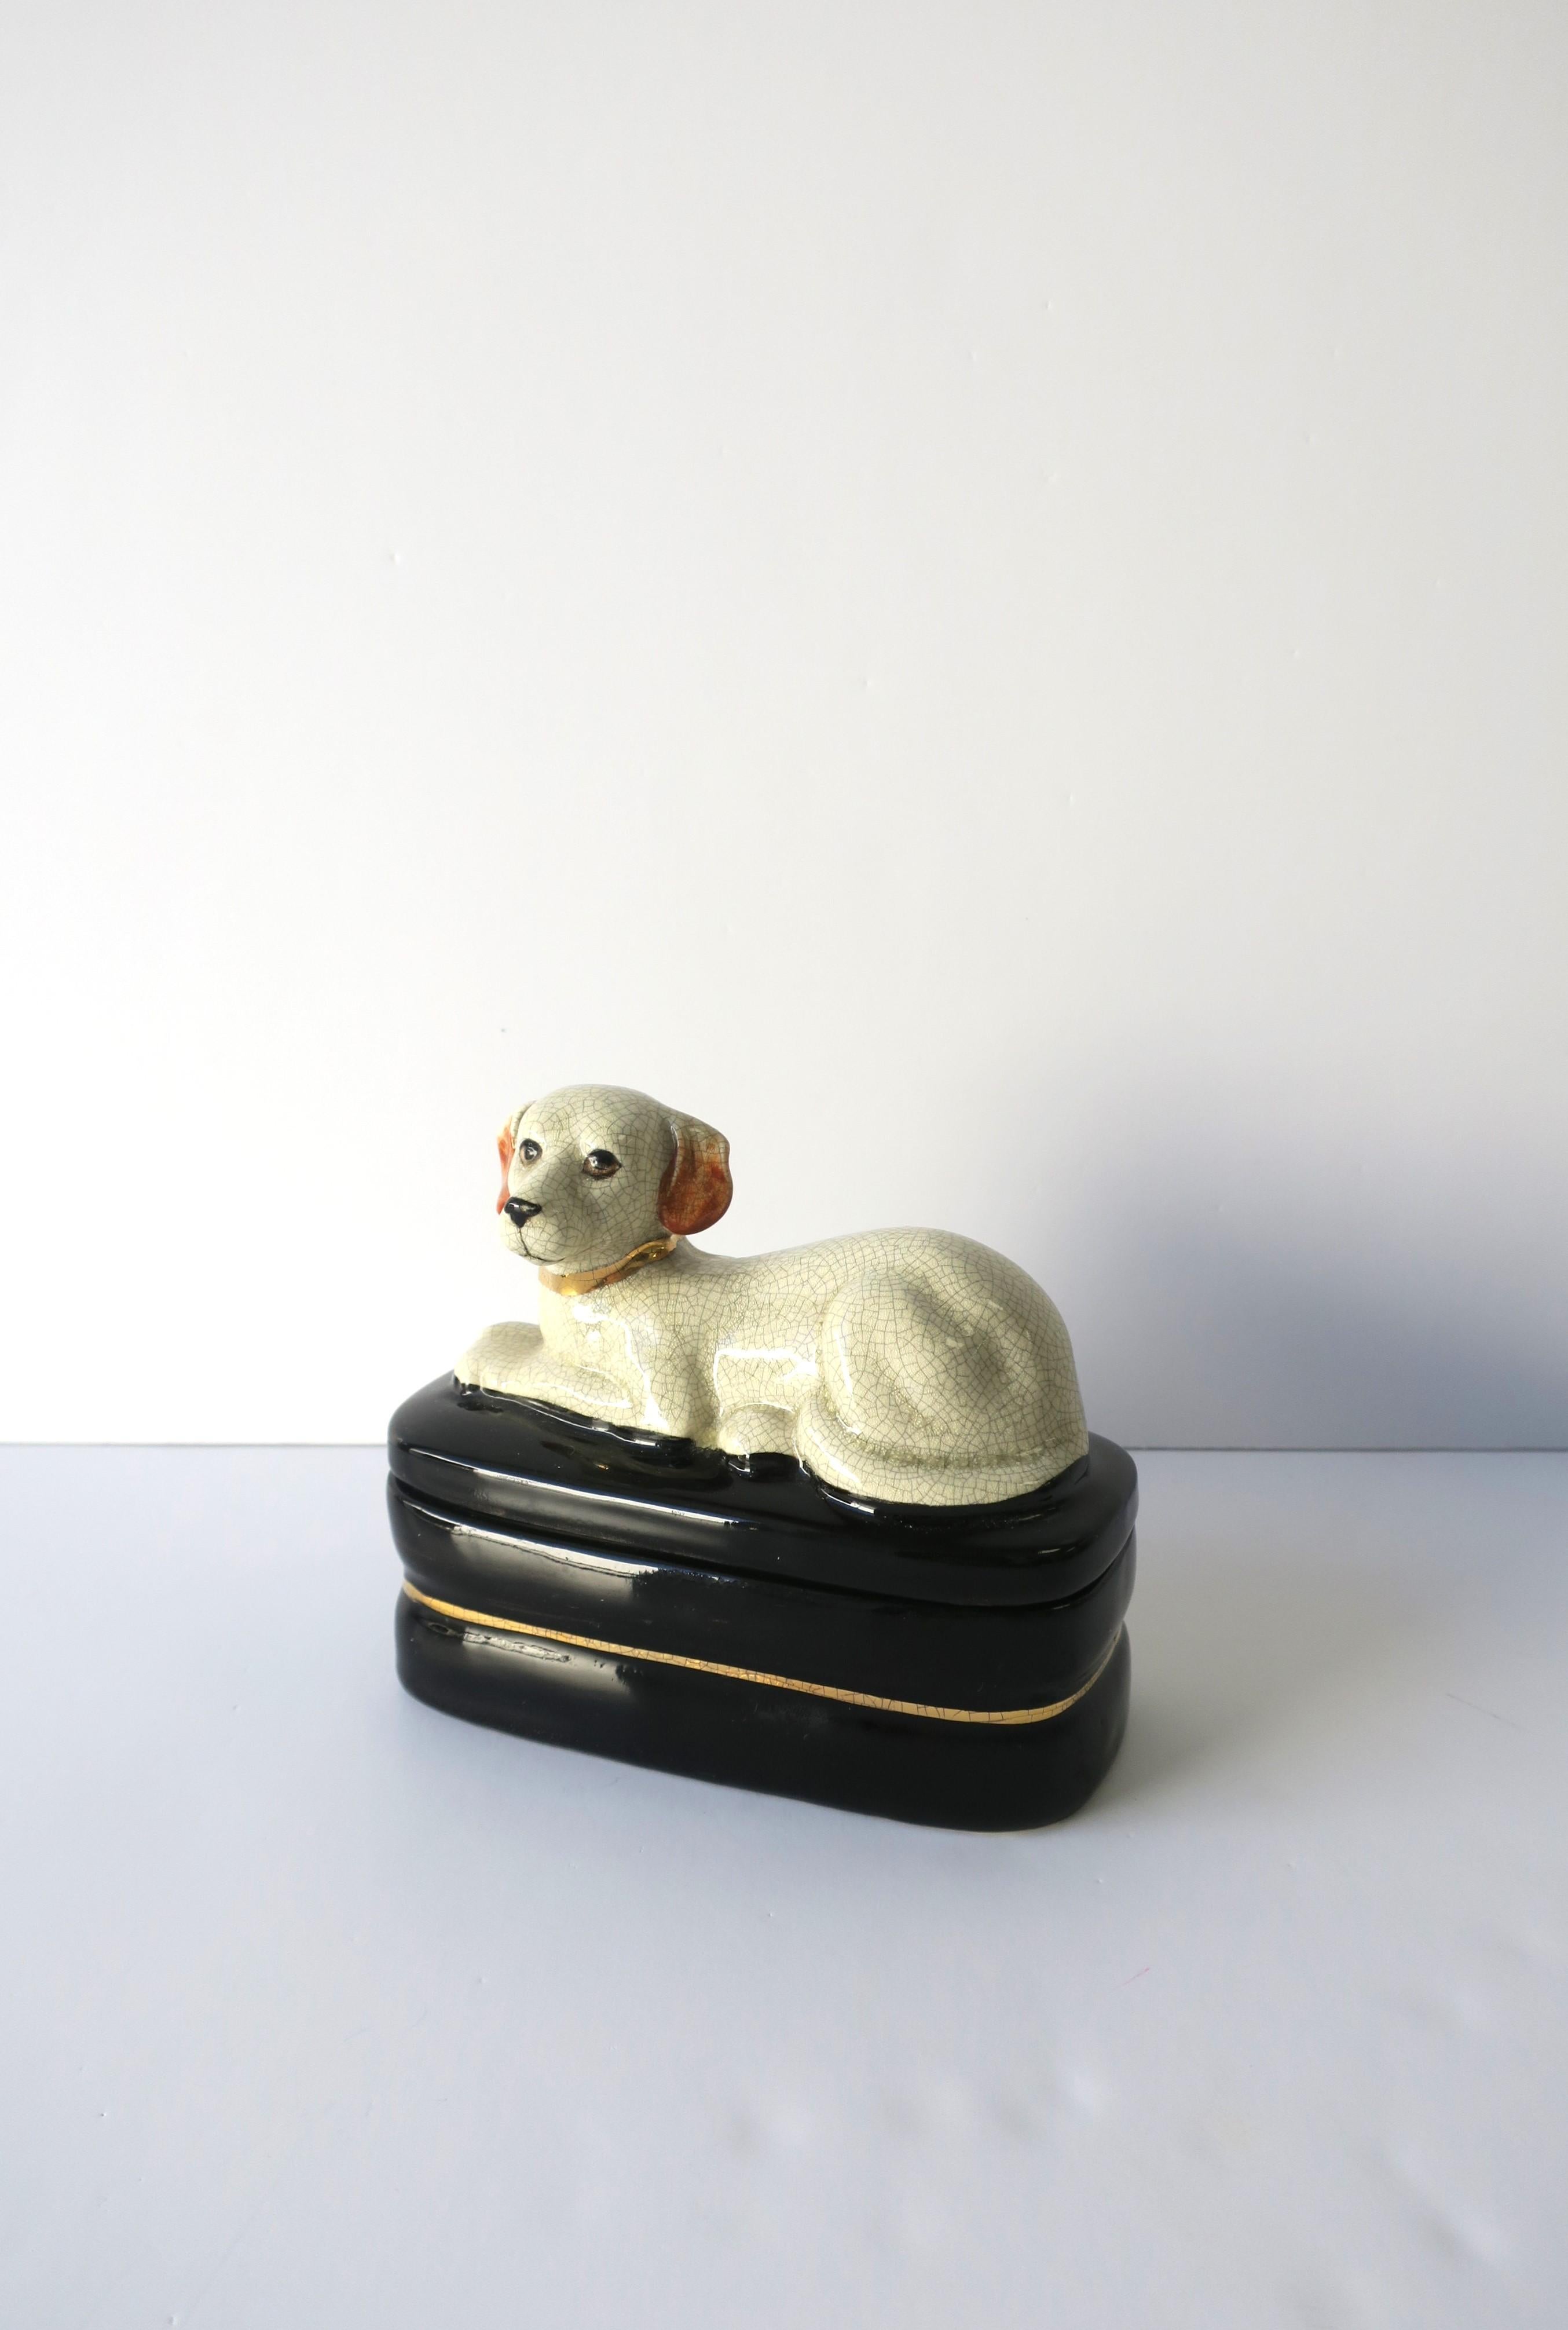 Labrador Retriever Dog Jewelry Box 6